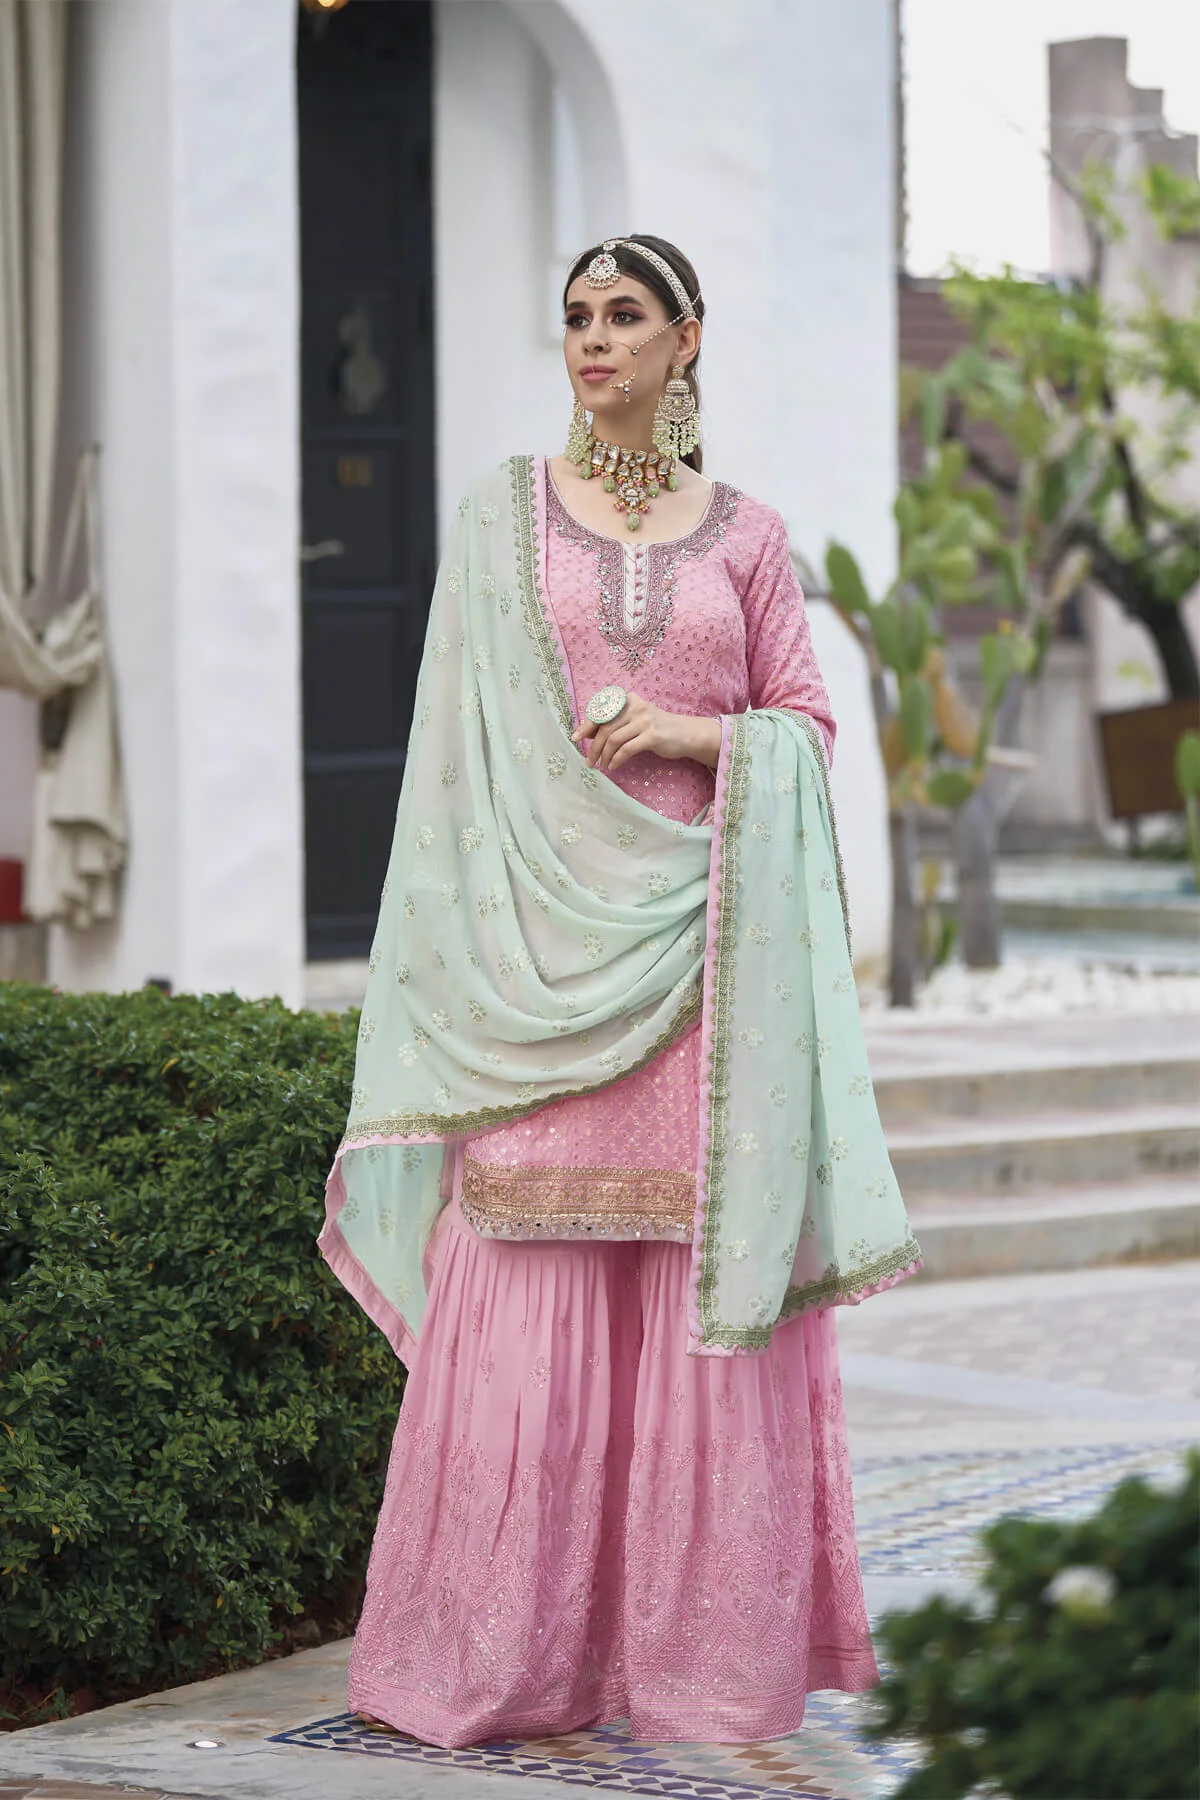 Pakistani Style Sharara Lehenga Suits online in Canada USA UK Australia New Zealand France Mauritius